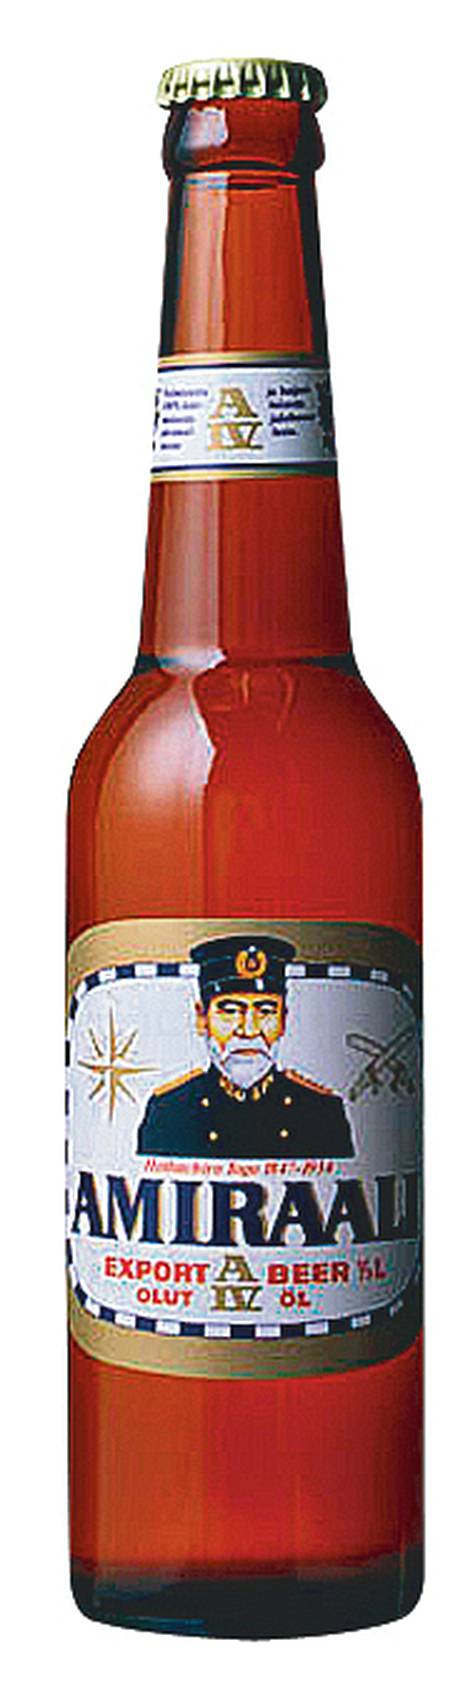 Amiraali Togoa juhlistavaa olutta myydään Japanissa tällaisessa pullossa.